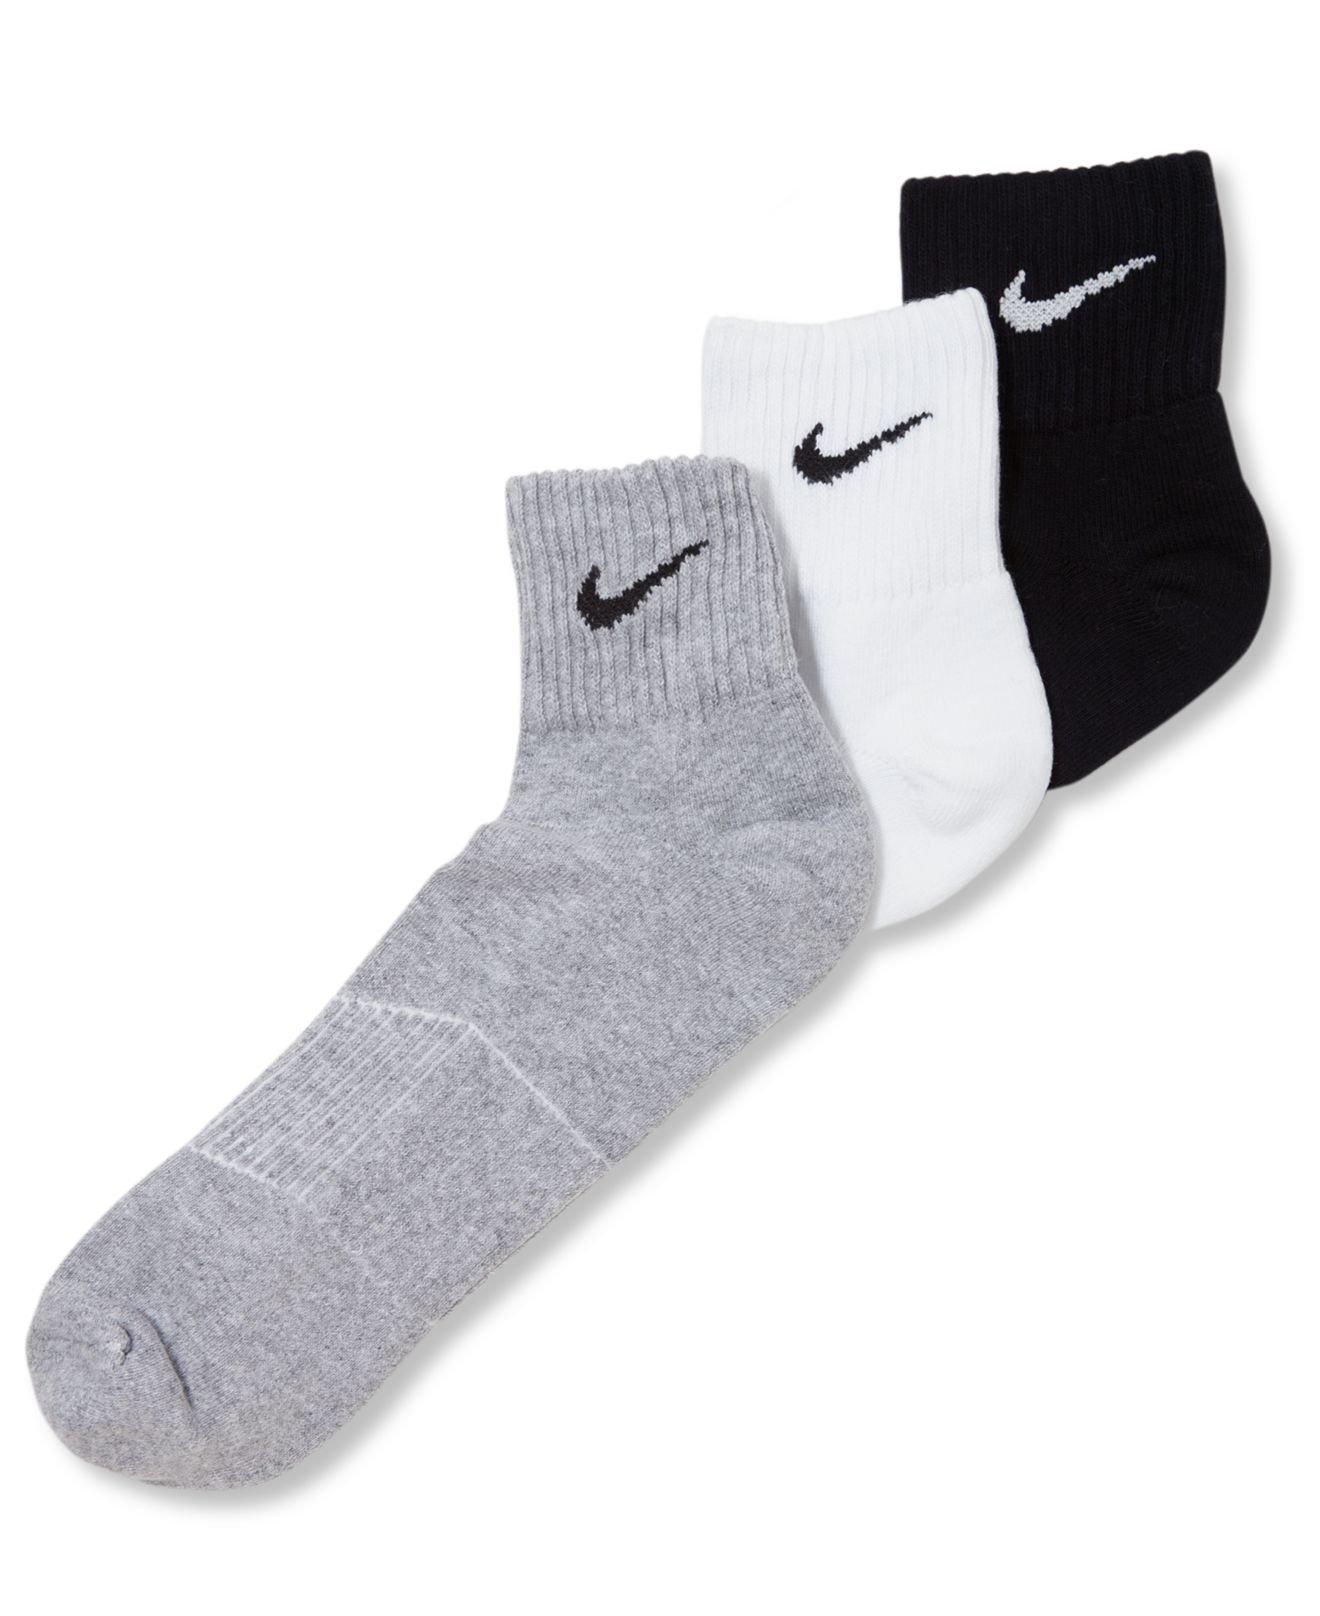 Nike Men's Socks, Cotton Cushion Quarter Extended Size 3 Pack in Black ...